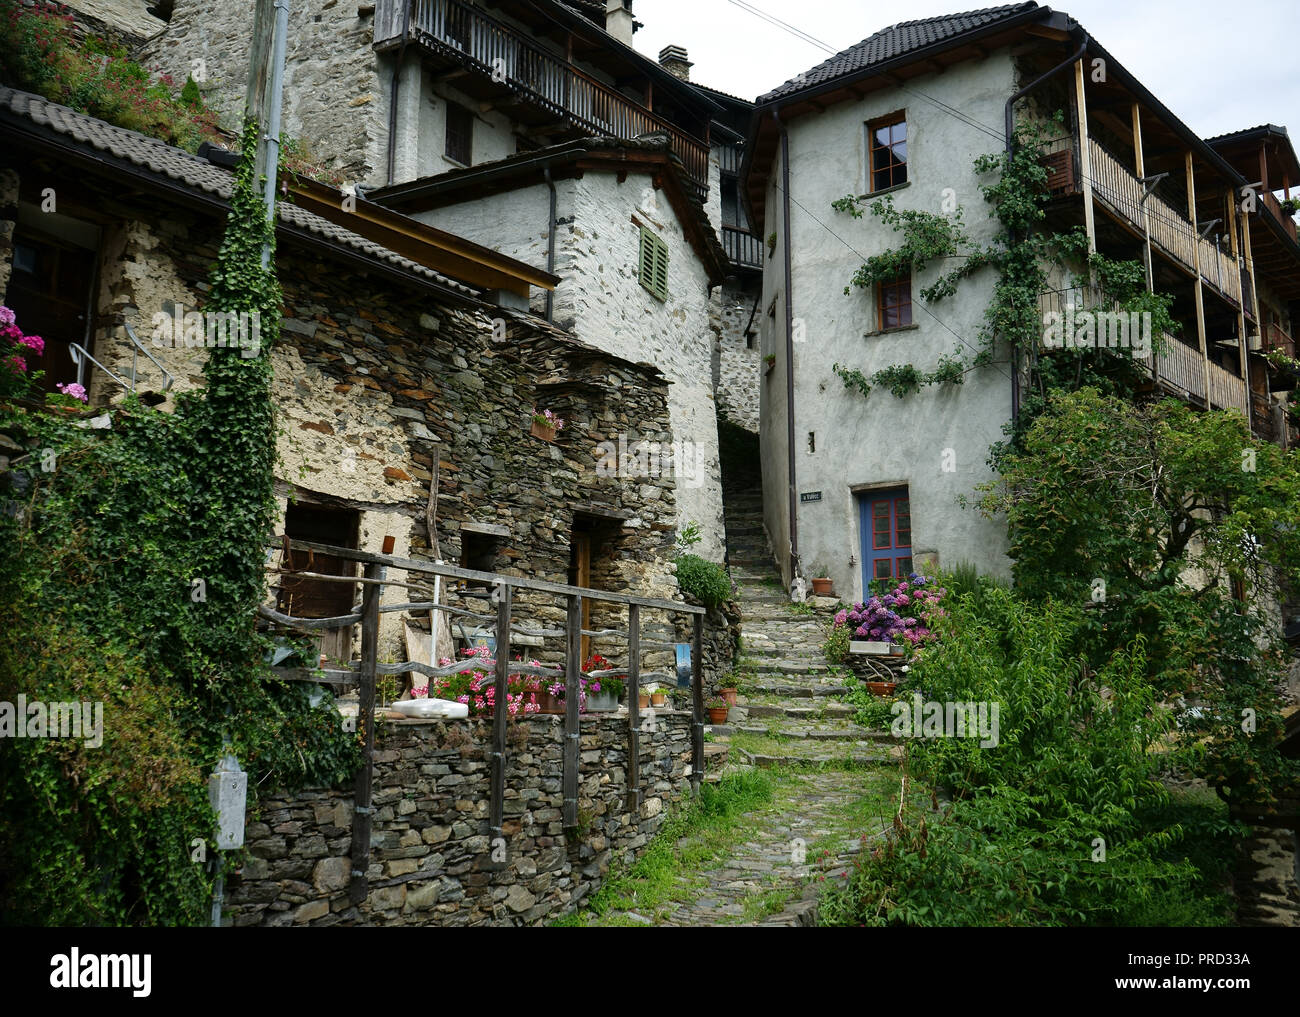 Die alten Häuser und die schmale Treppe in der Stadt Indemini, Tessin, Schweiz Stockfoto